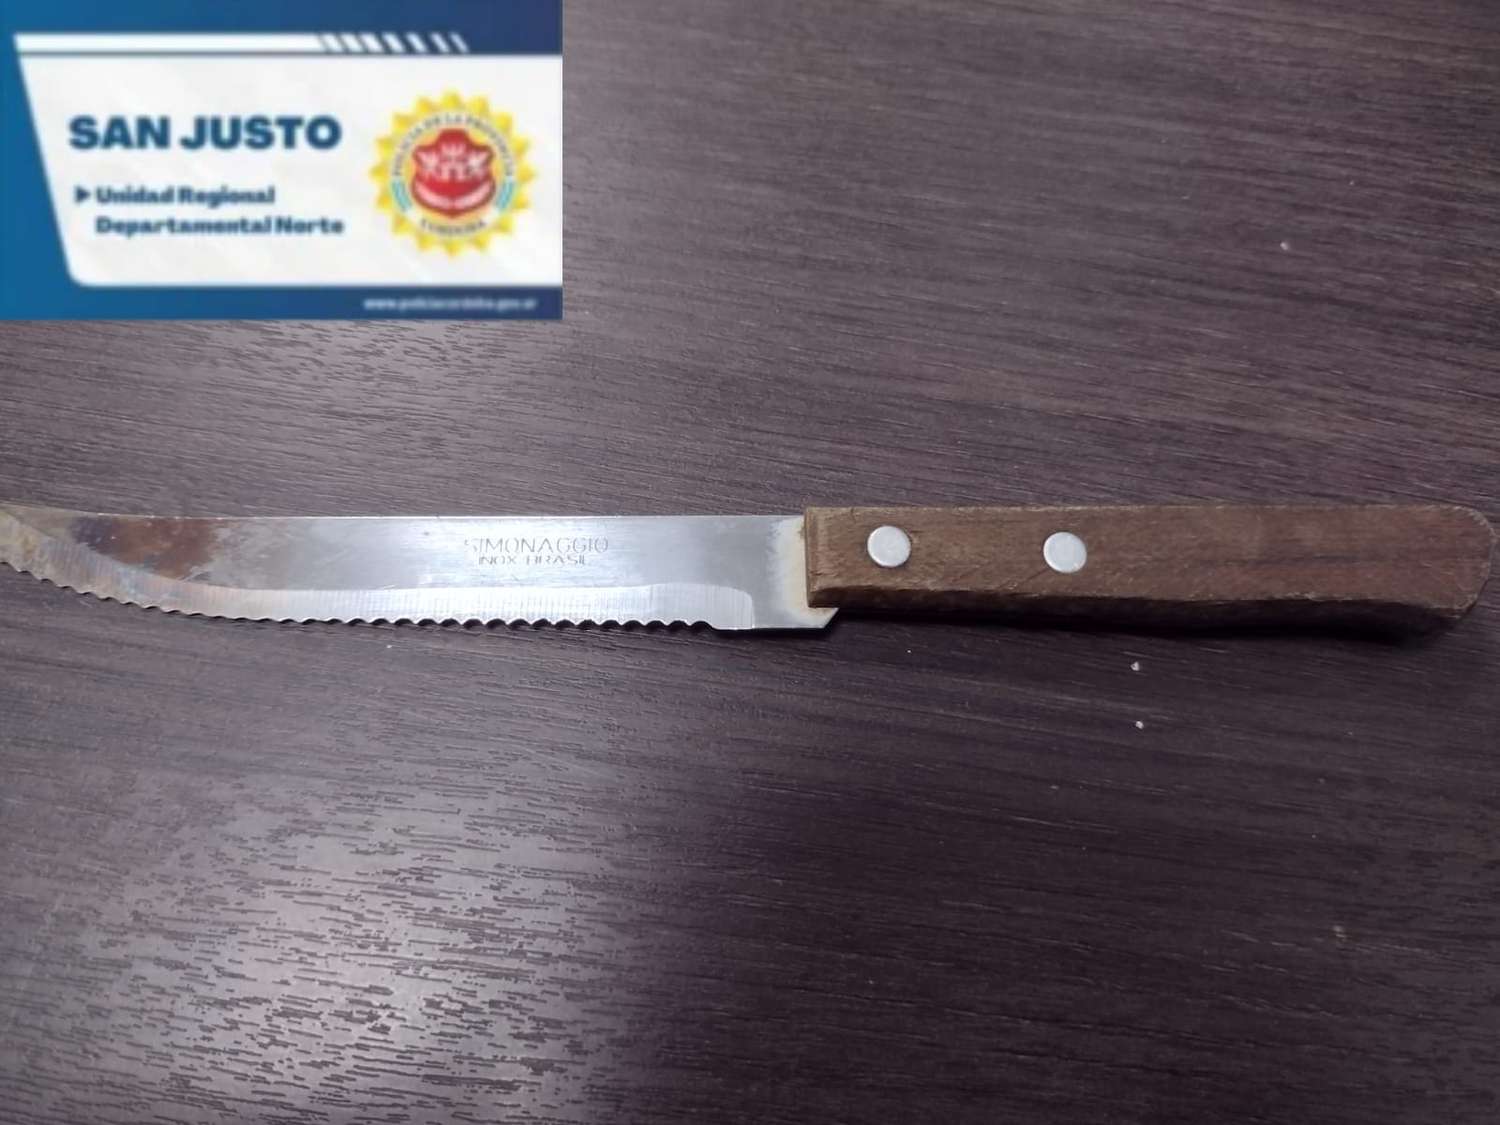 Cuchillo utilizado por joven para amenazar a la Policía